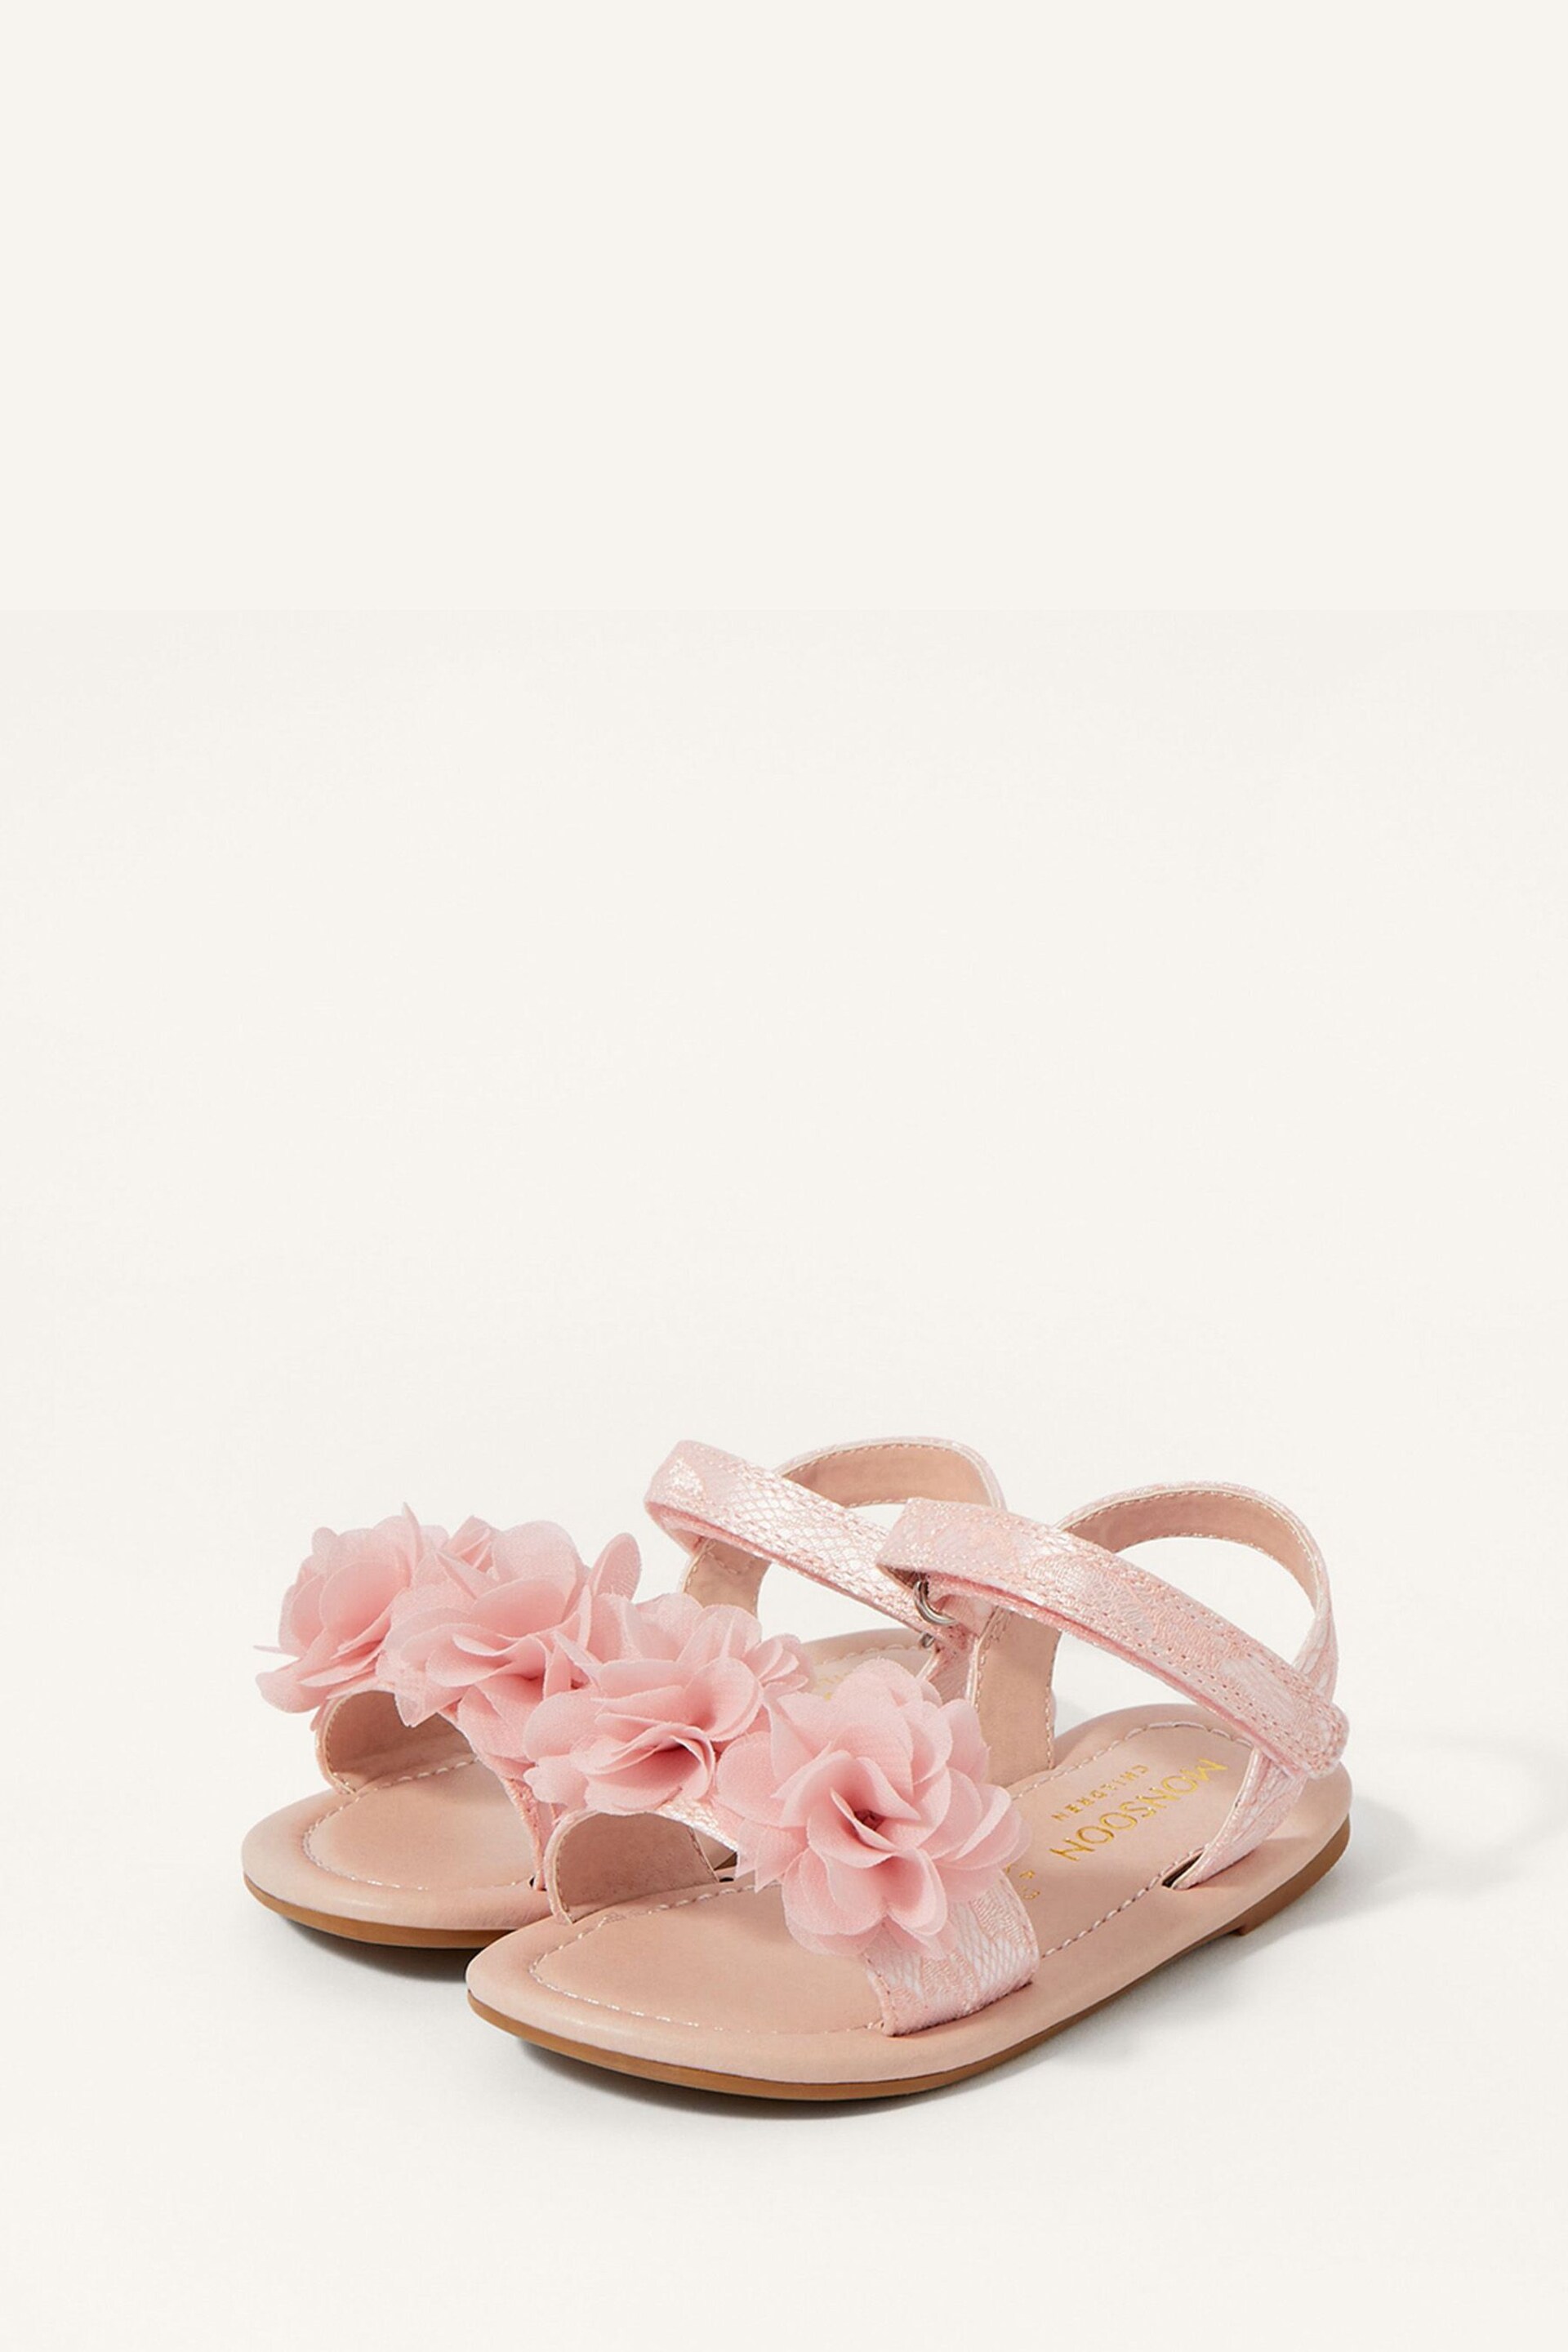 Monsoon Pink Shimmer Corsage Walker Sandals - Image 2 of 2